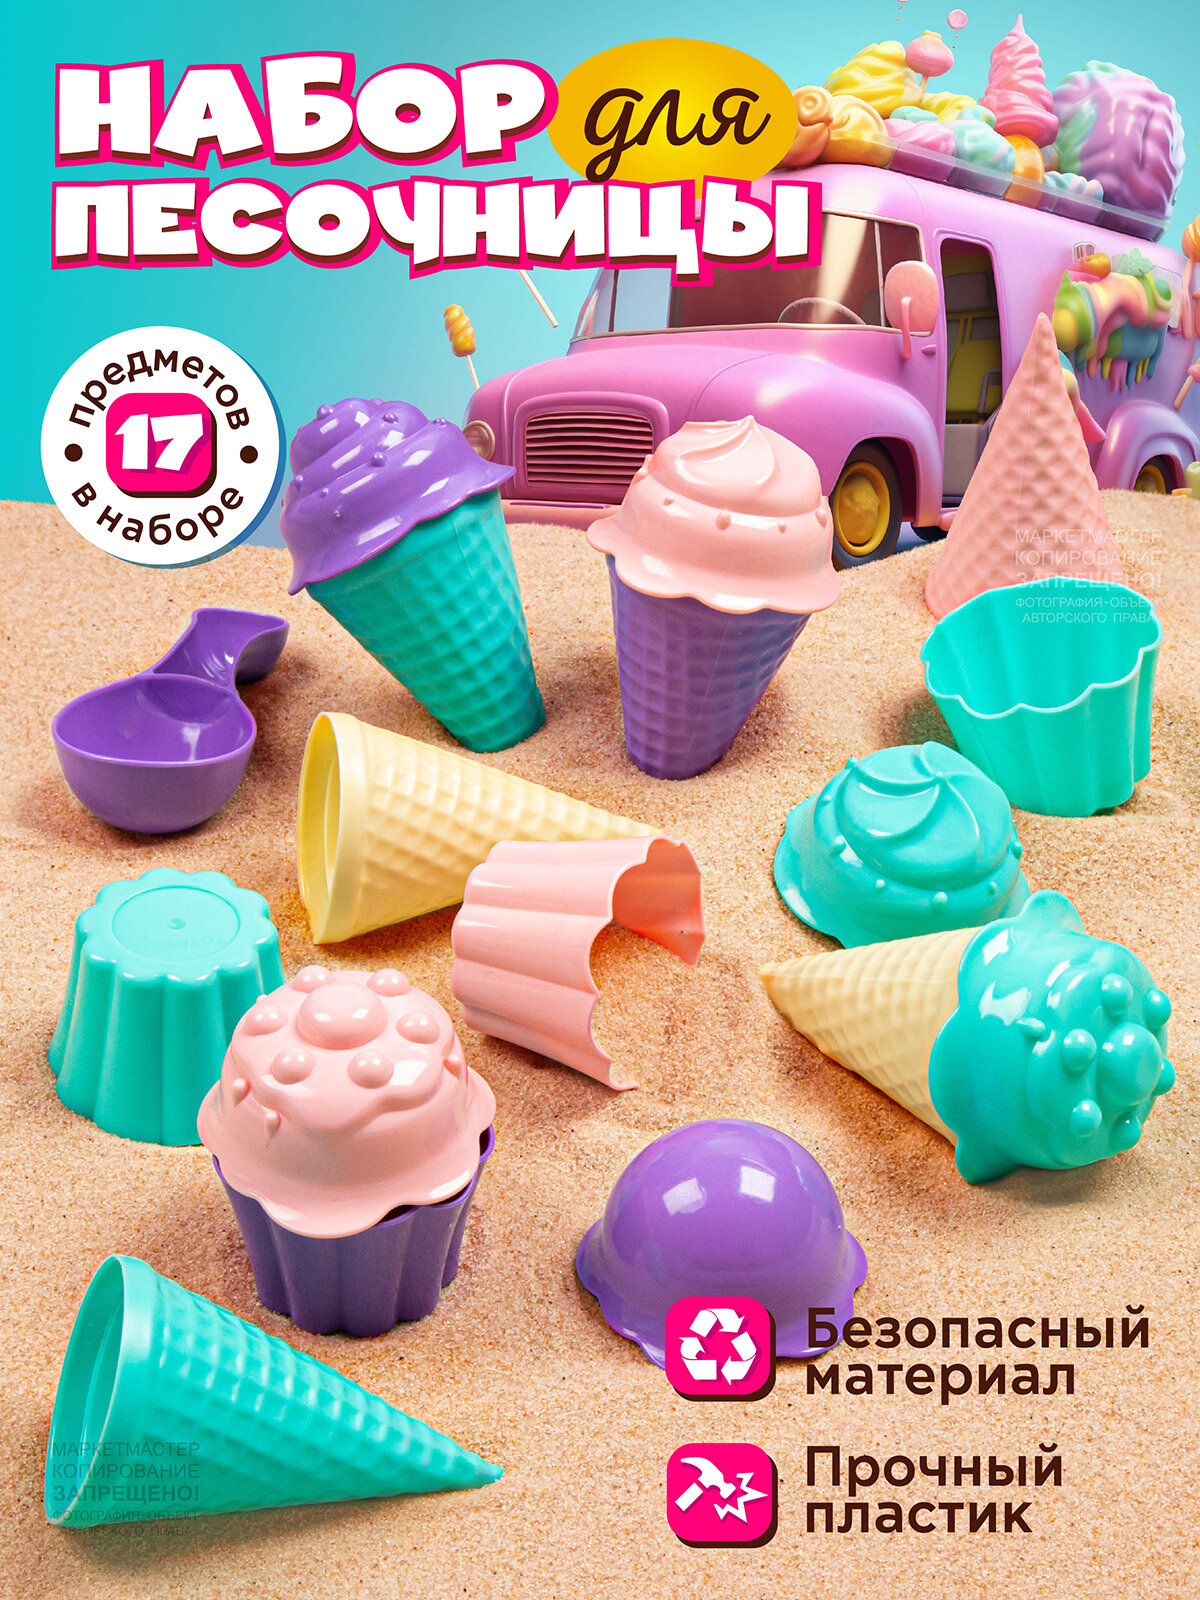 Песочный набор Мороженое ТМ "Джамбо Тойз", набор кондитера, маффины, формочки, для игры в песочнице, JB5300644